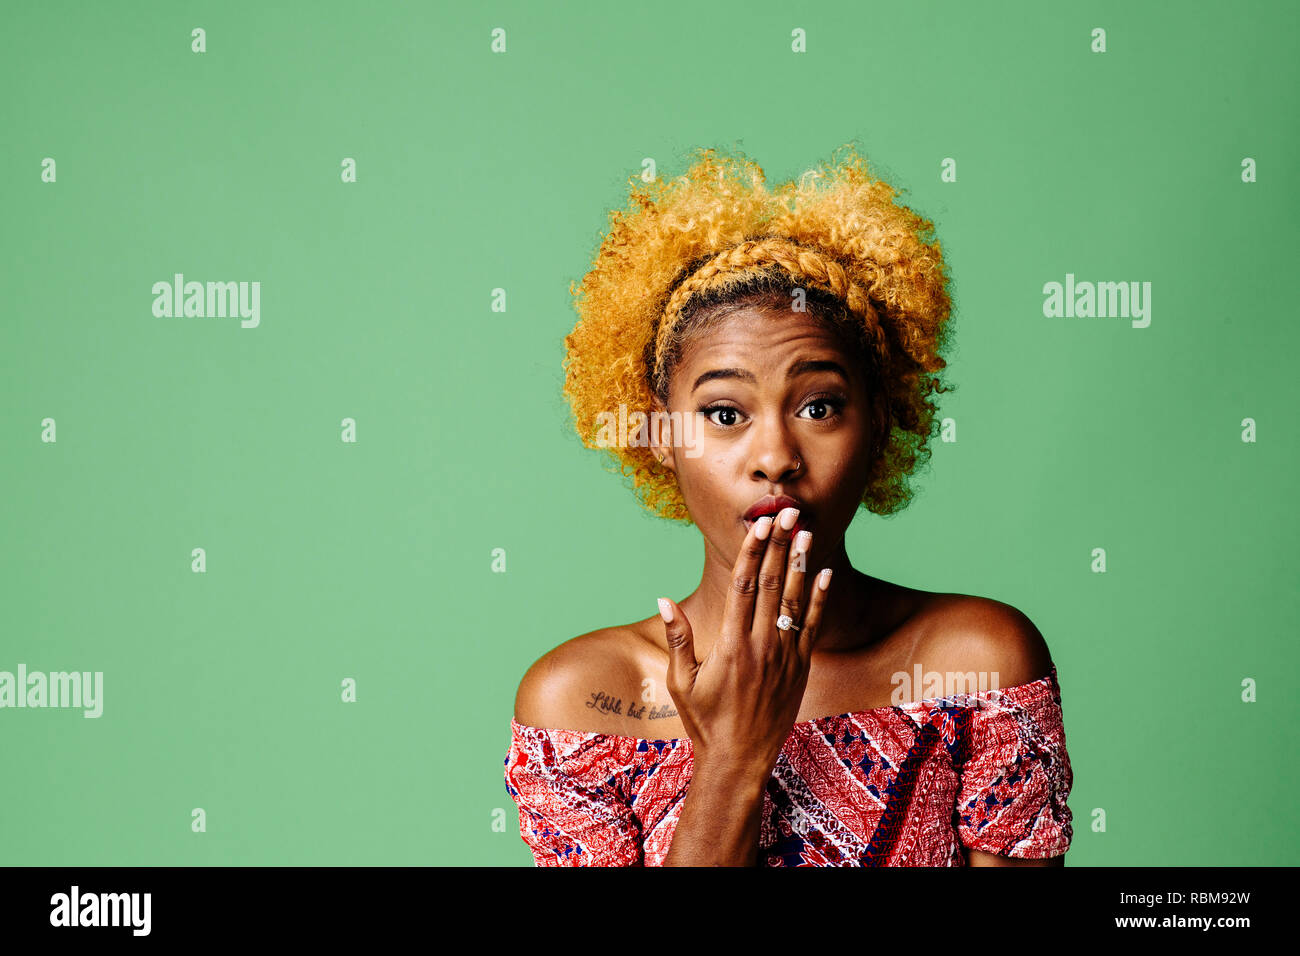 Junge Frau mit einem entsetzten Ausdruck in die Kamera schaut, auf grüner studio Hintergrund isoliert Stockfoto